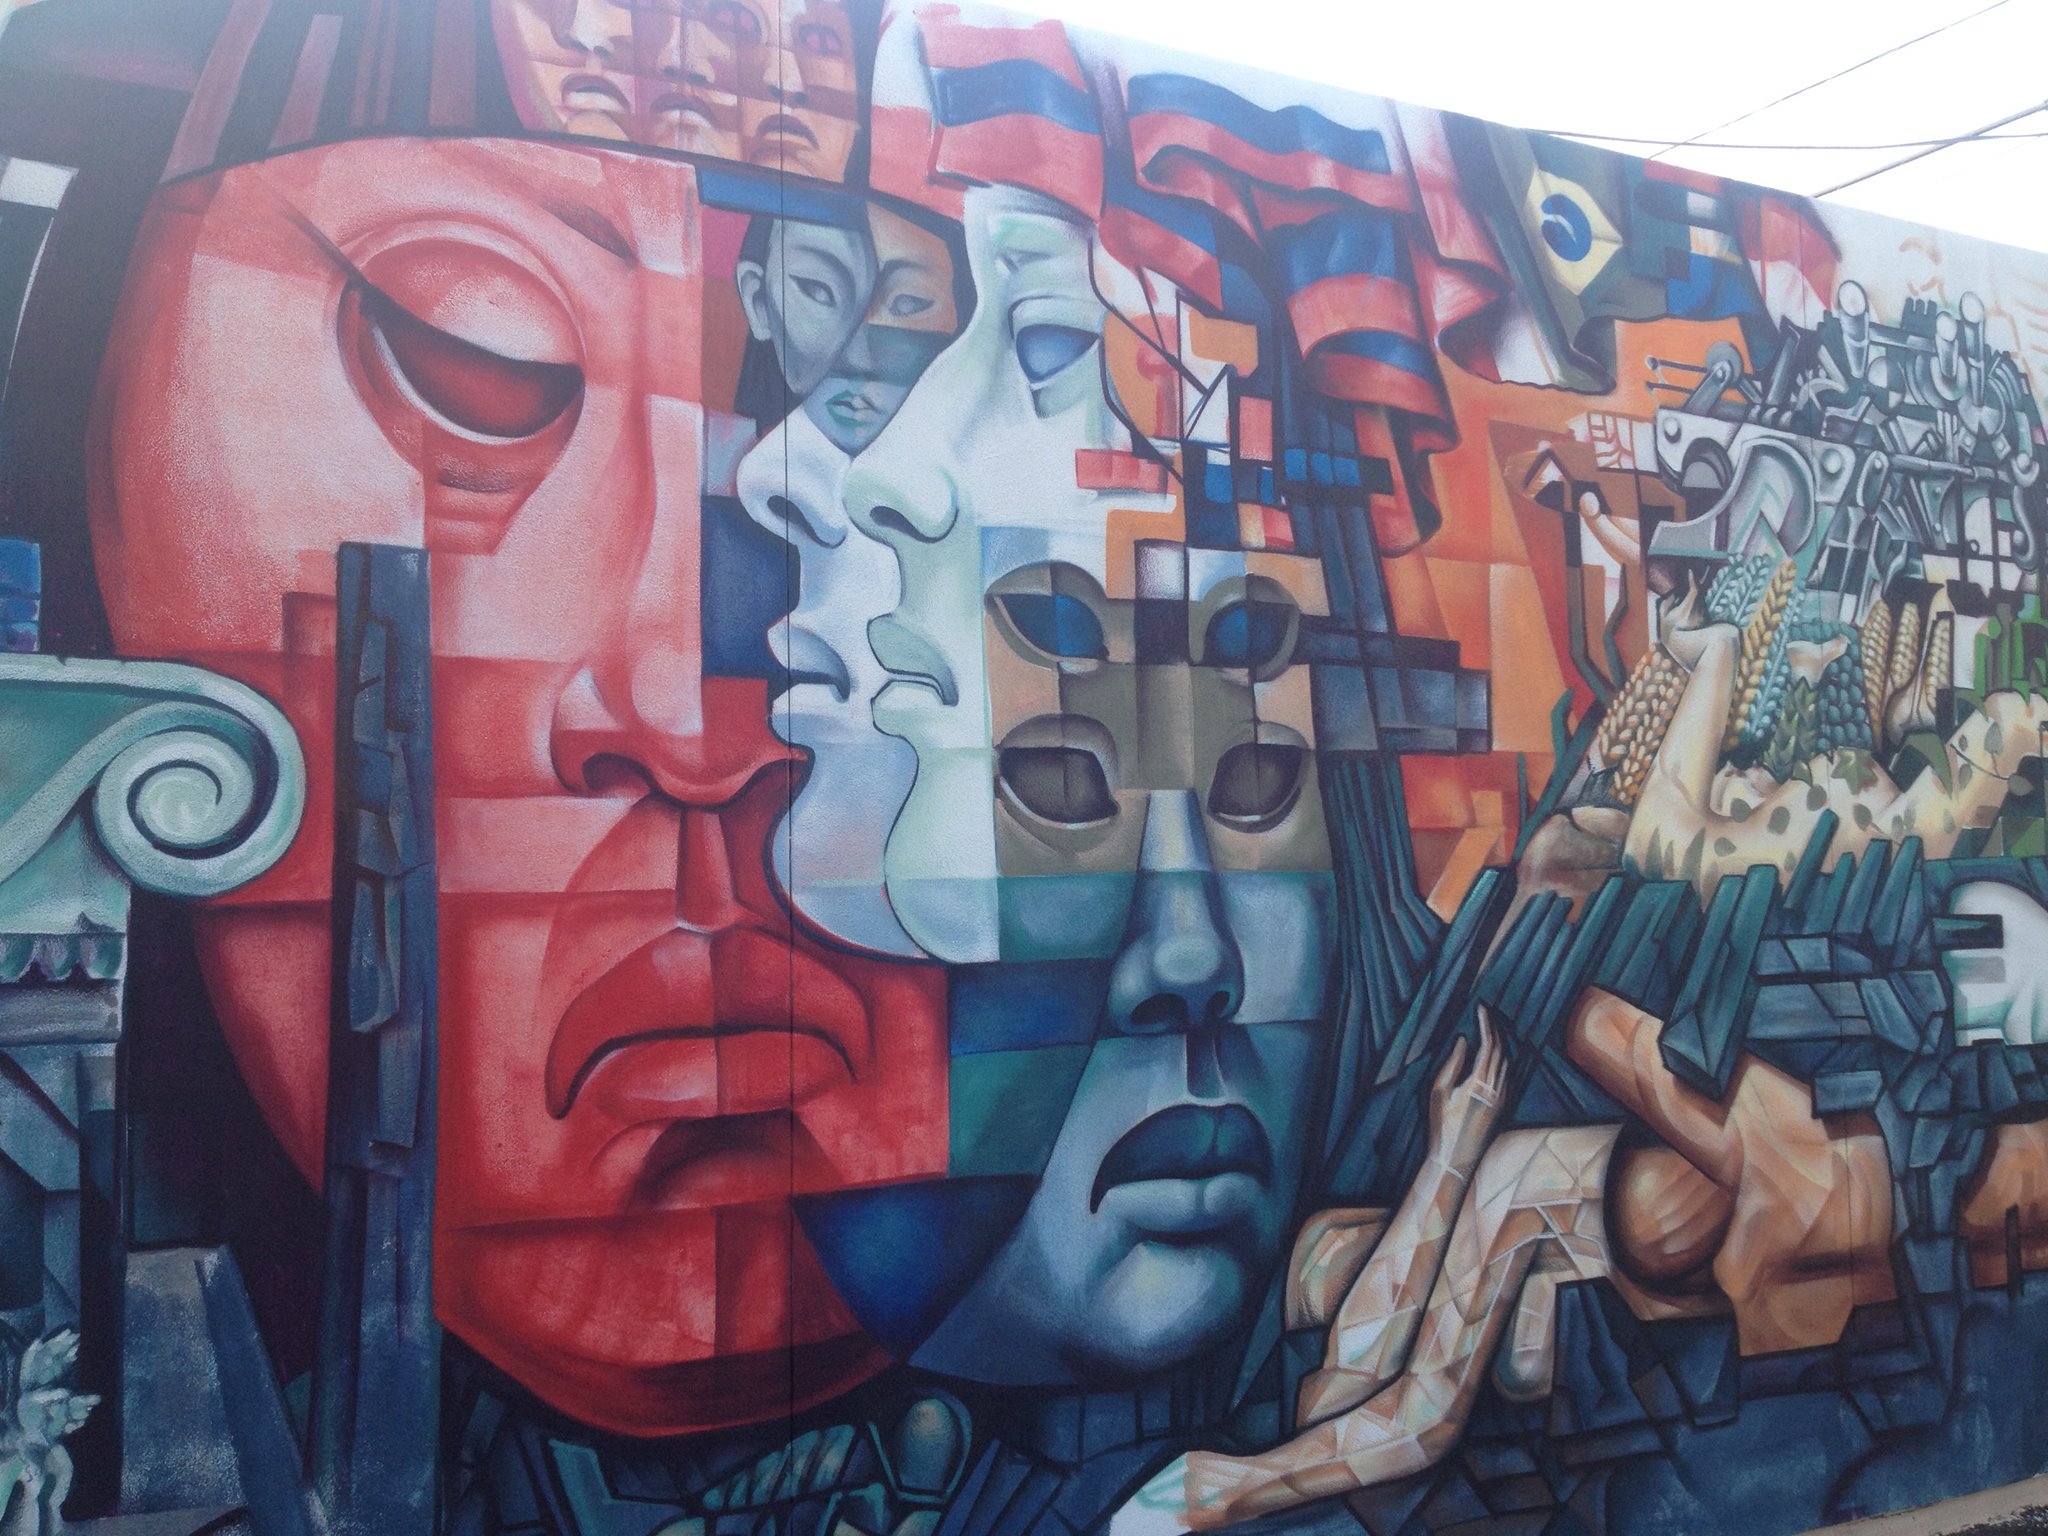 Wide Open Walls mural festival Sacramento California